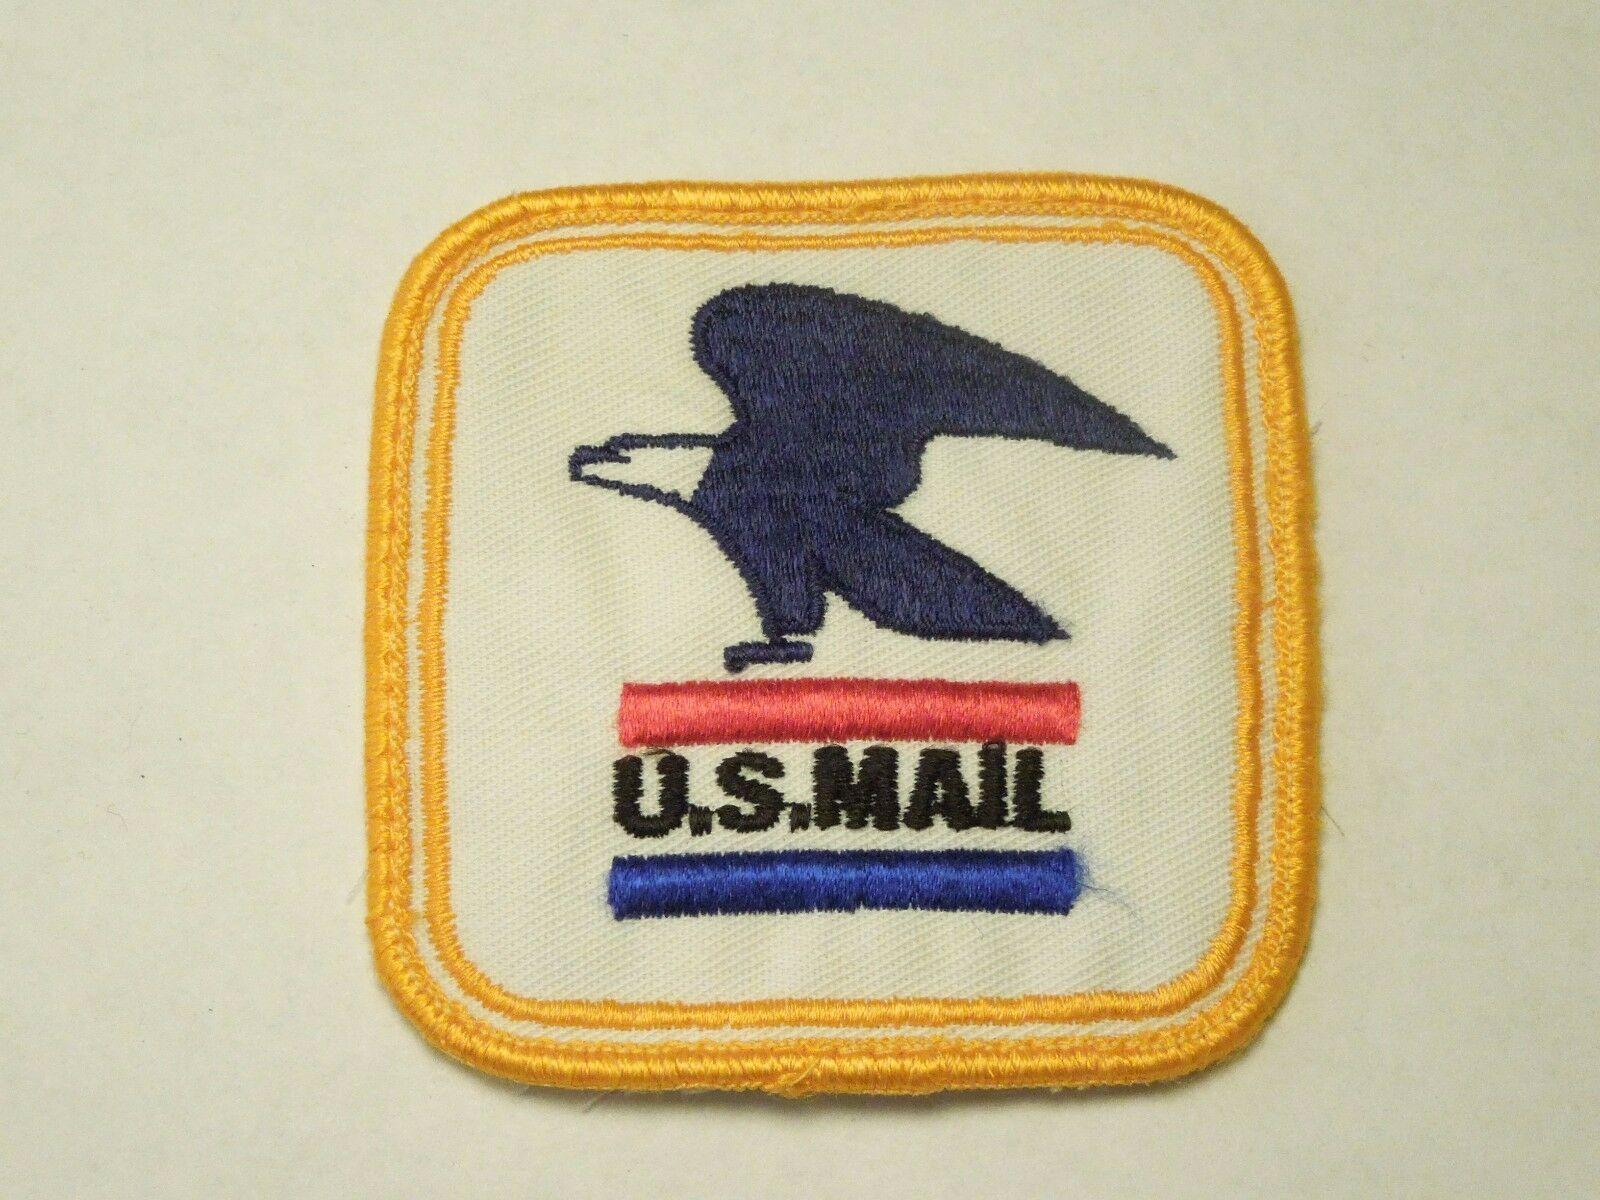 Postal Eagle Logo - VINTAGE U.S. MAIL Postal Service Eagle Logo Embroidered Sew On Patch